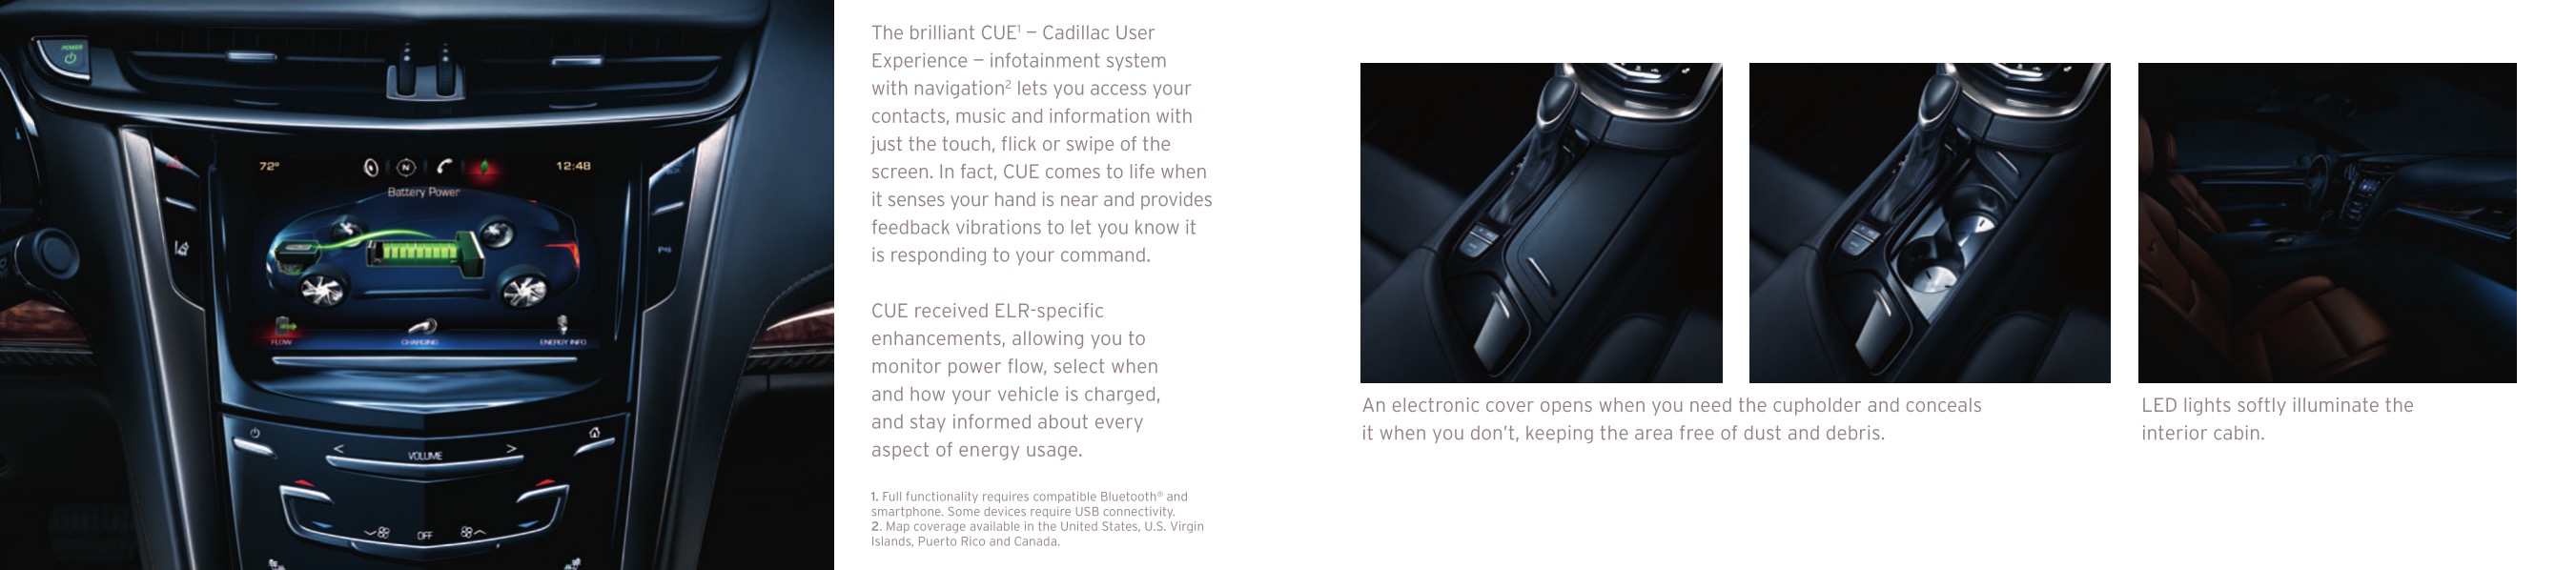 2014 Cadillac ELR Brochure Page 8